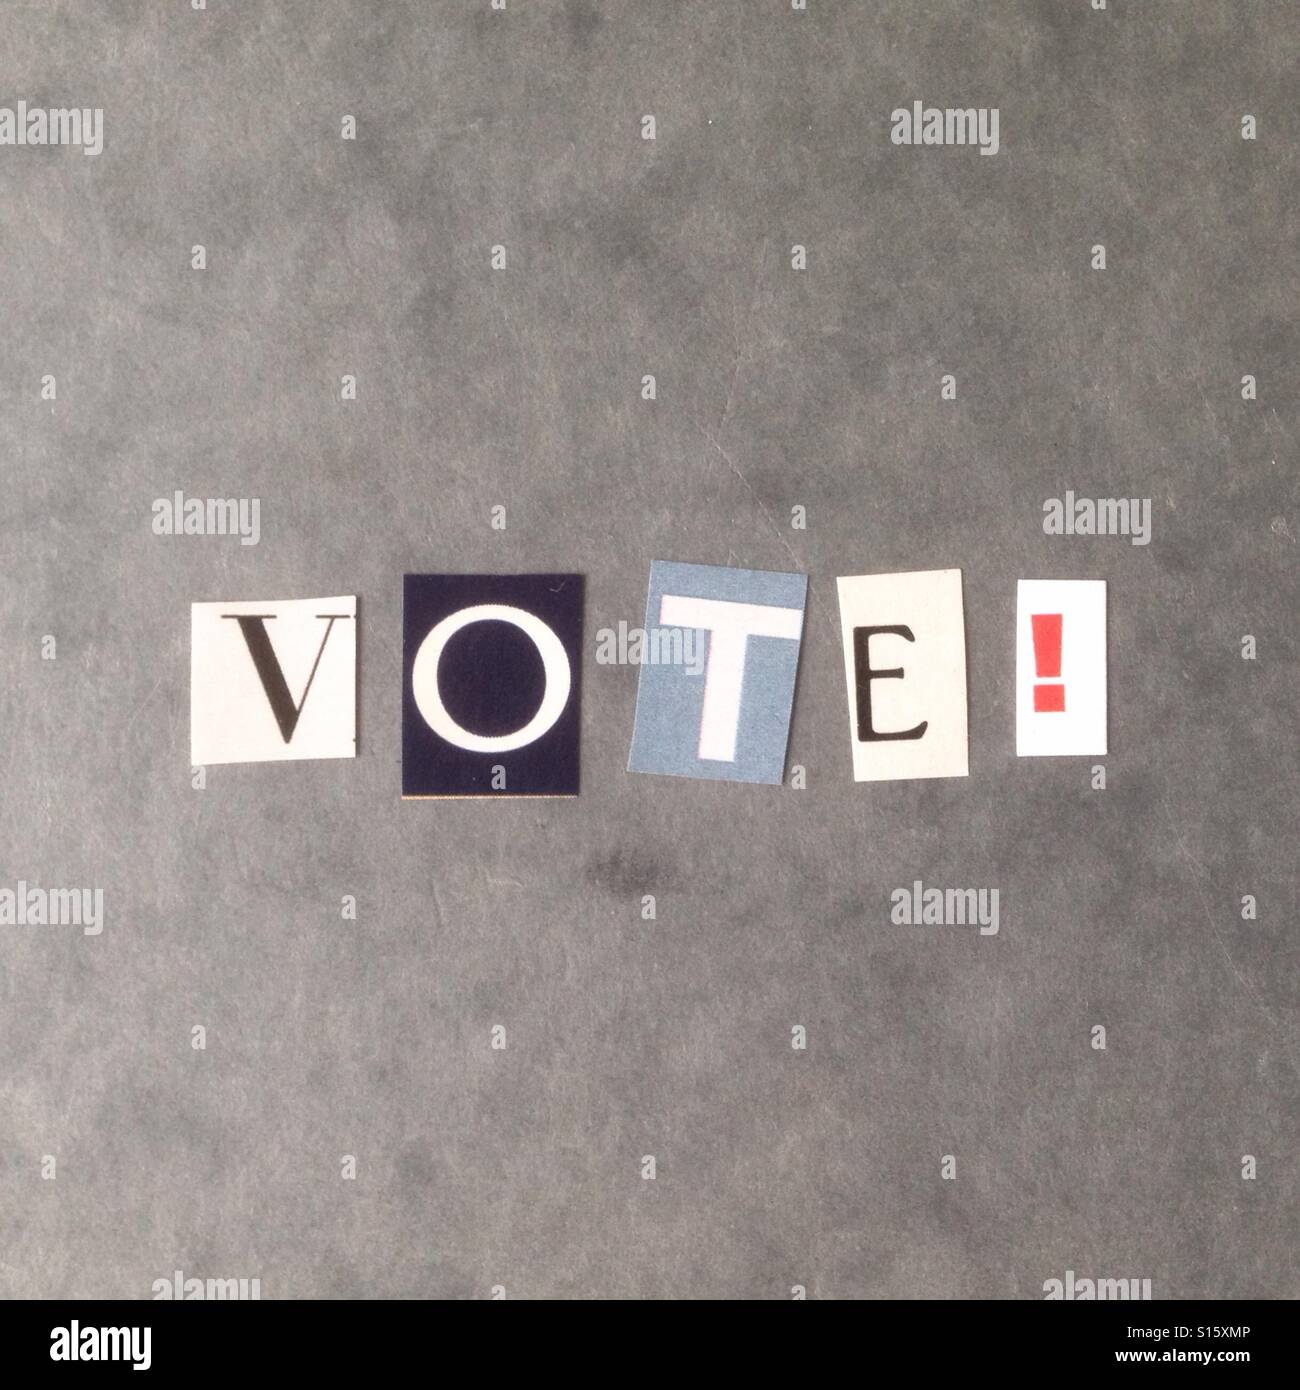 Le mot Vote écrit avec des lettres de coupure de journal Banque D'Images